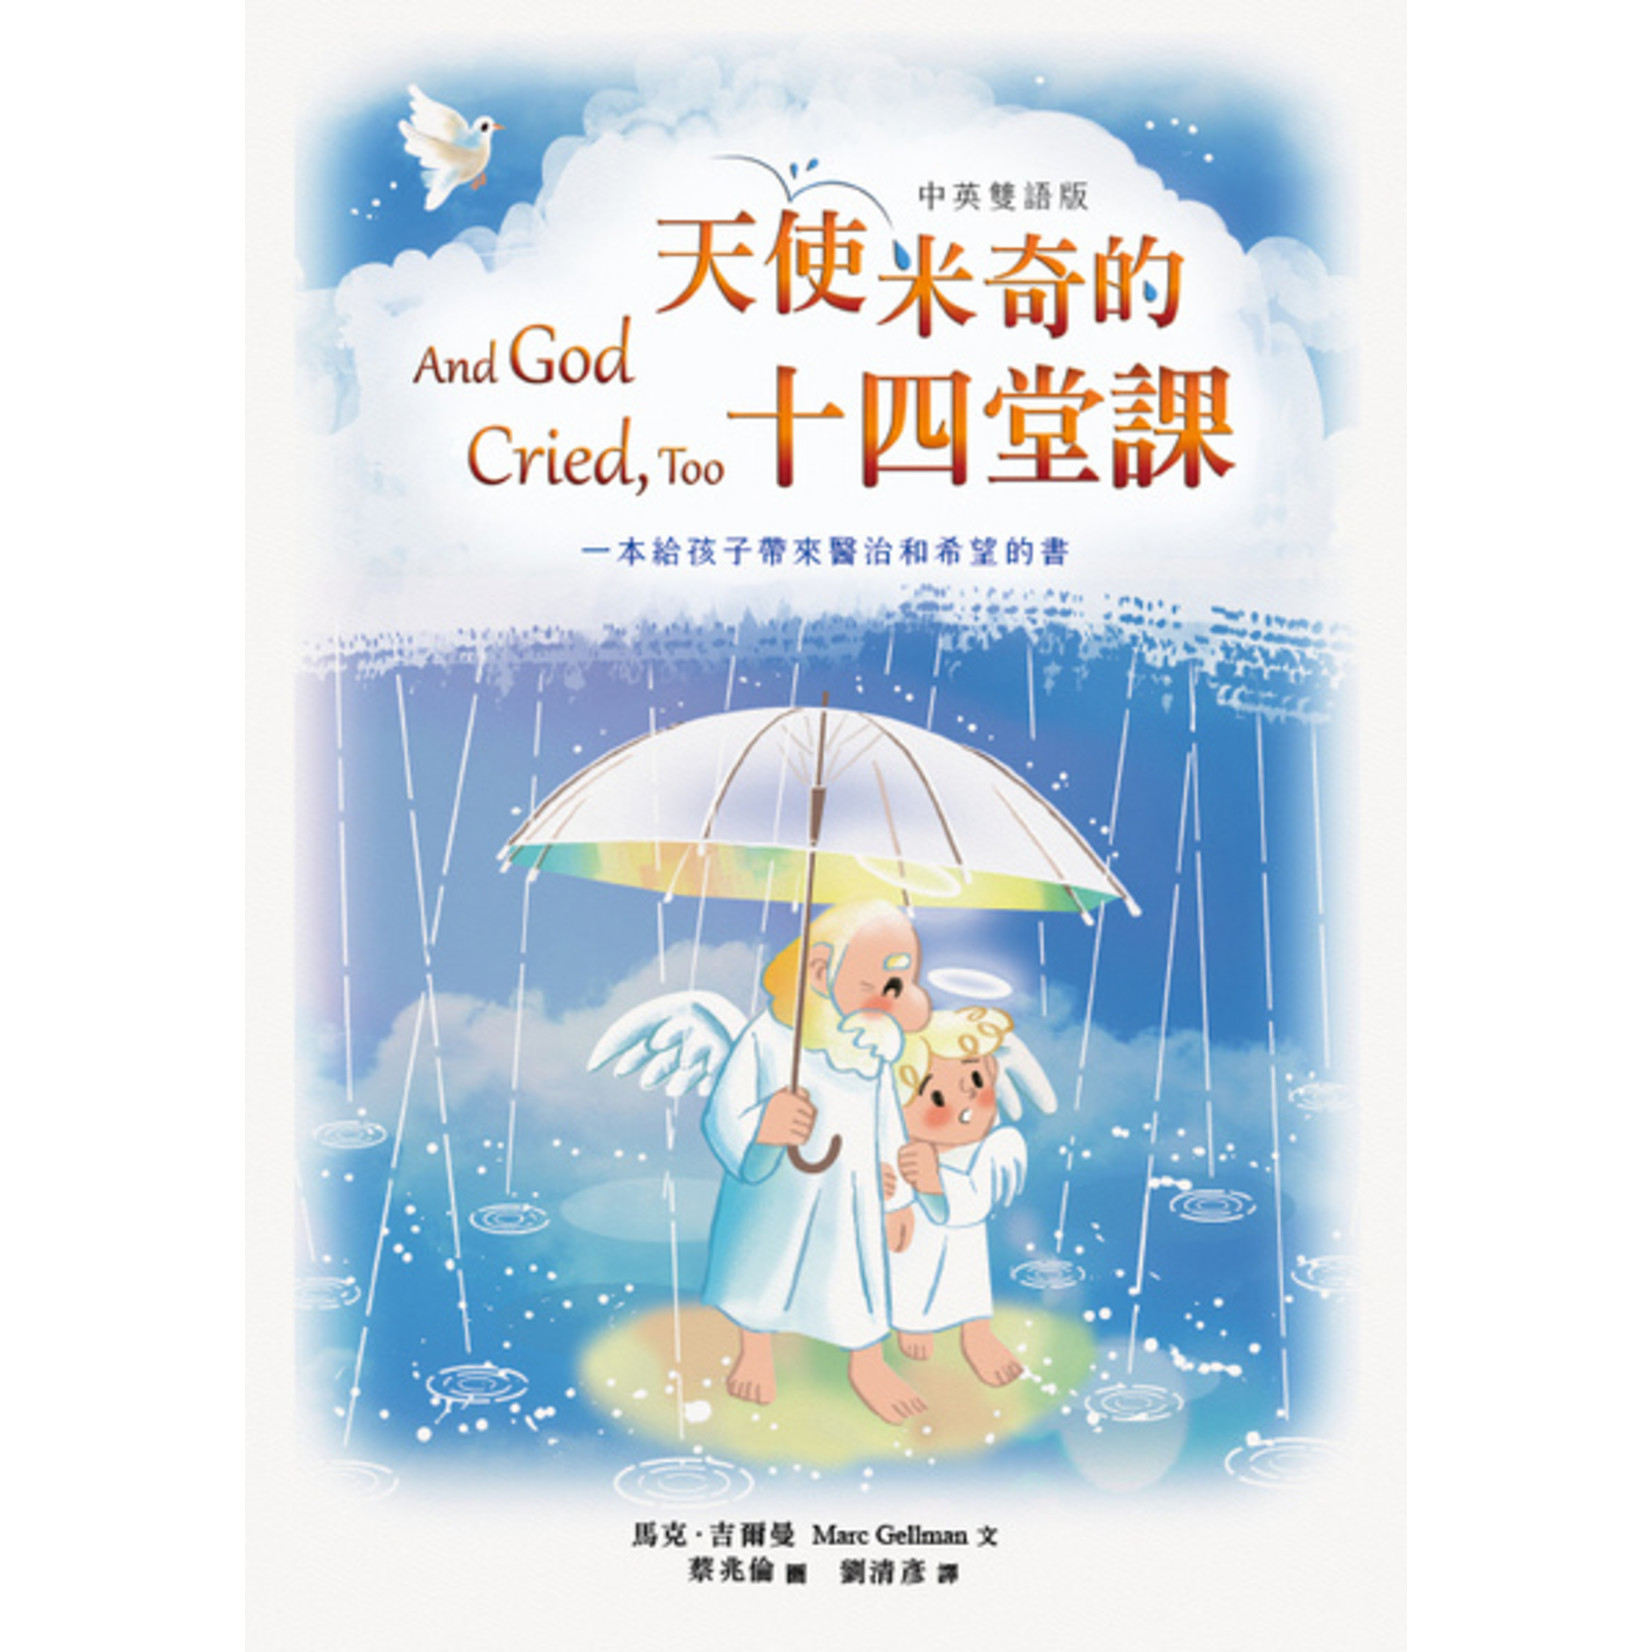 道聲 Taosheng Taiwan 天使米奇的十四堂課（中英雙語版） | And God Cried, too